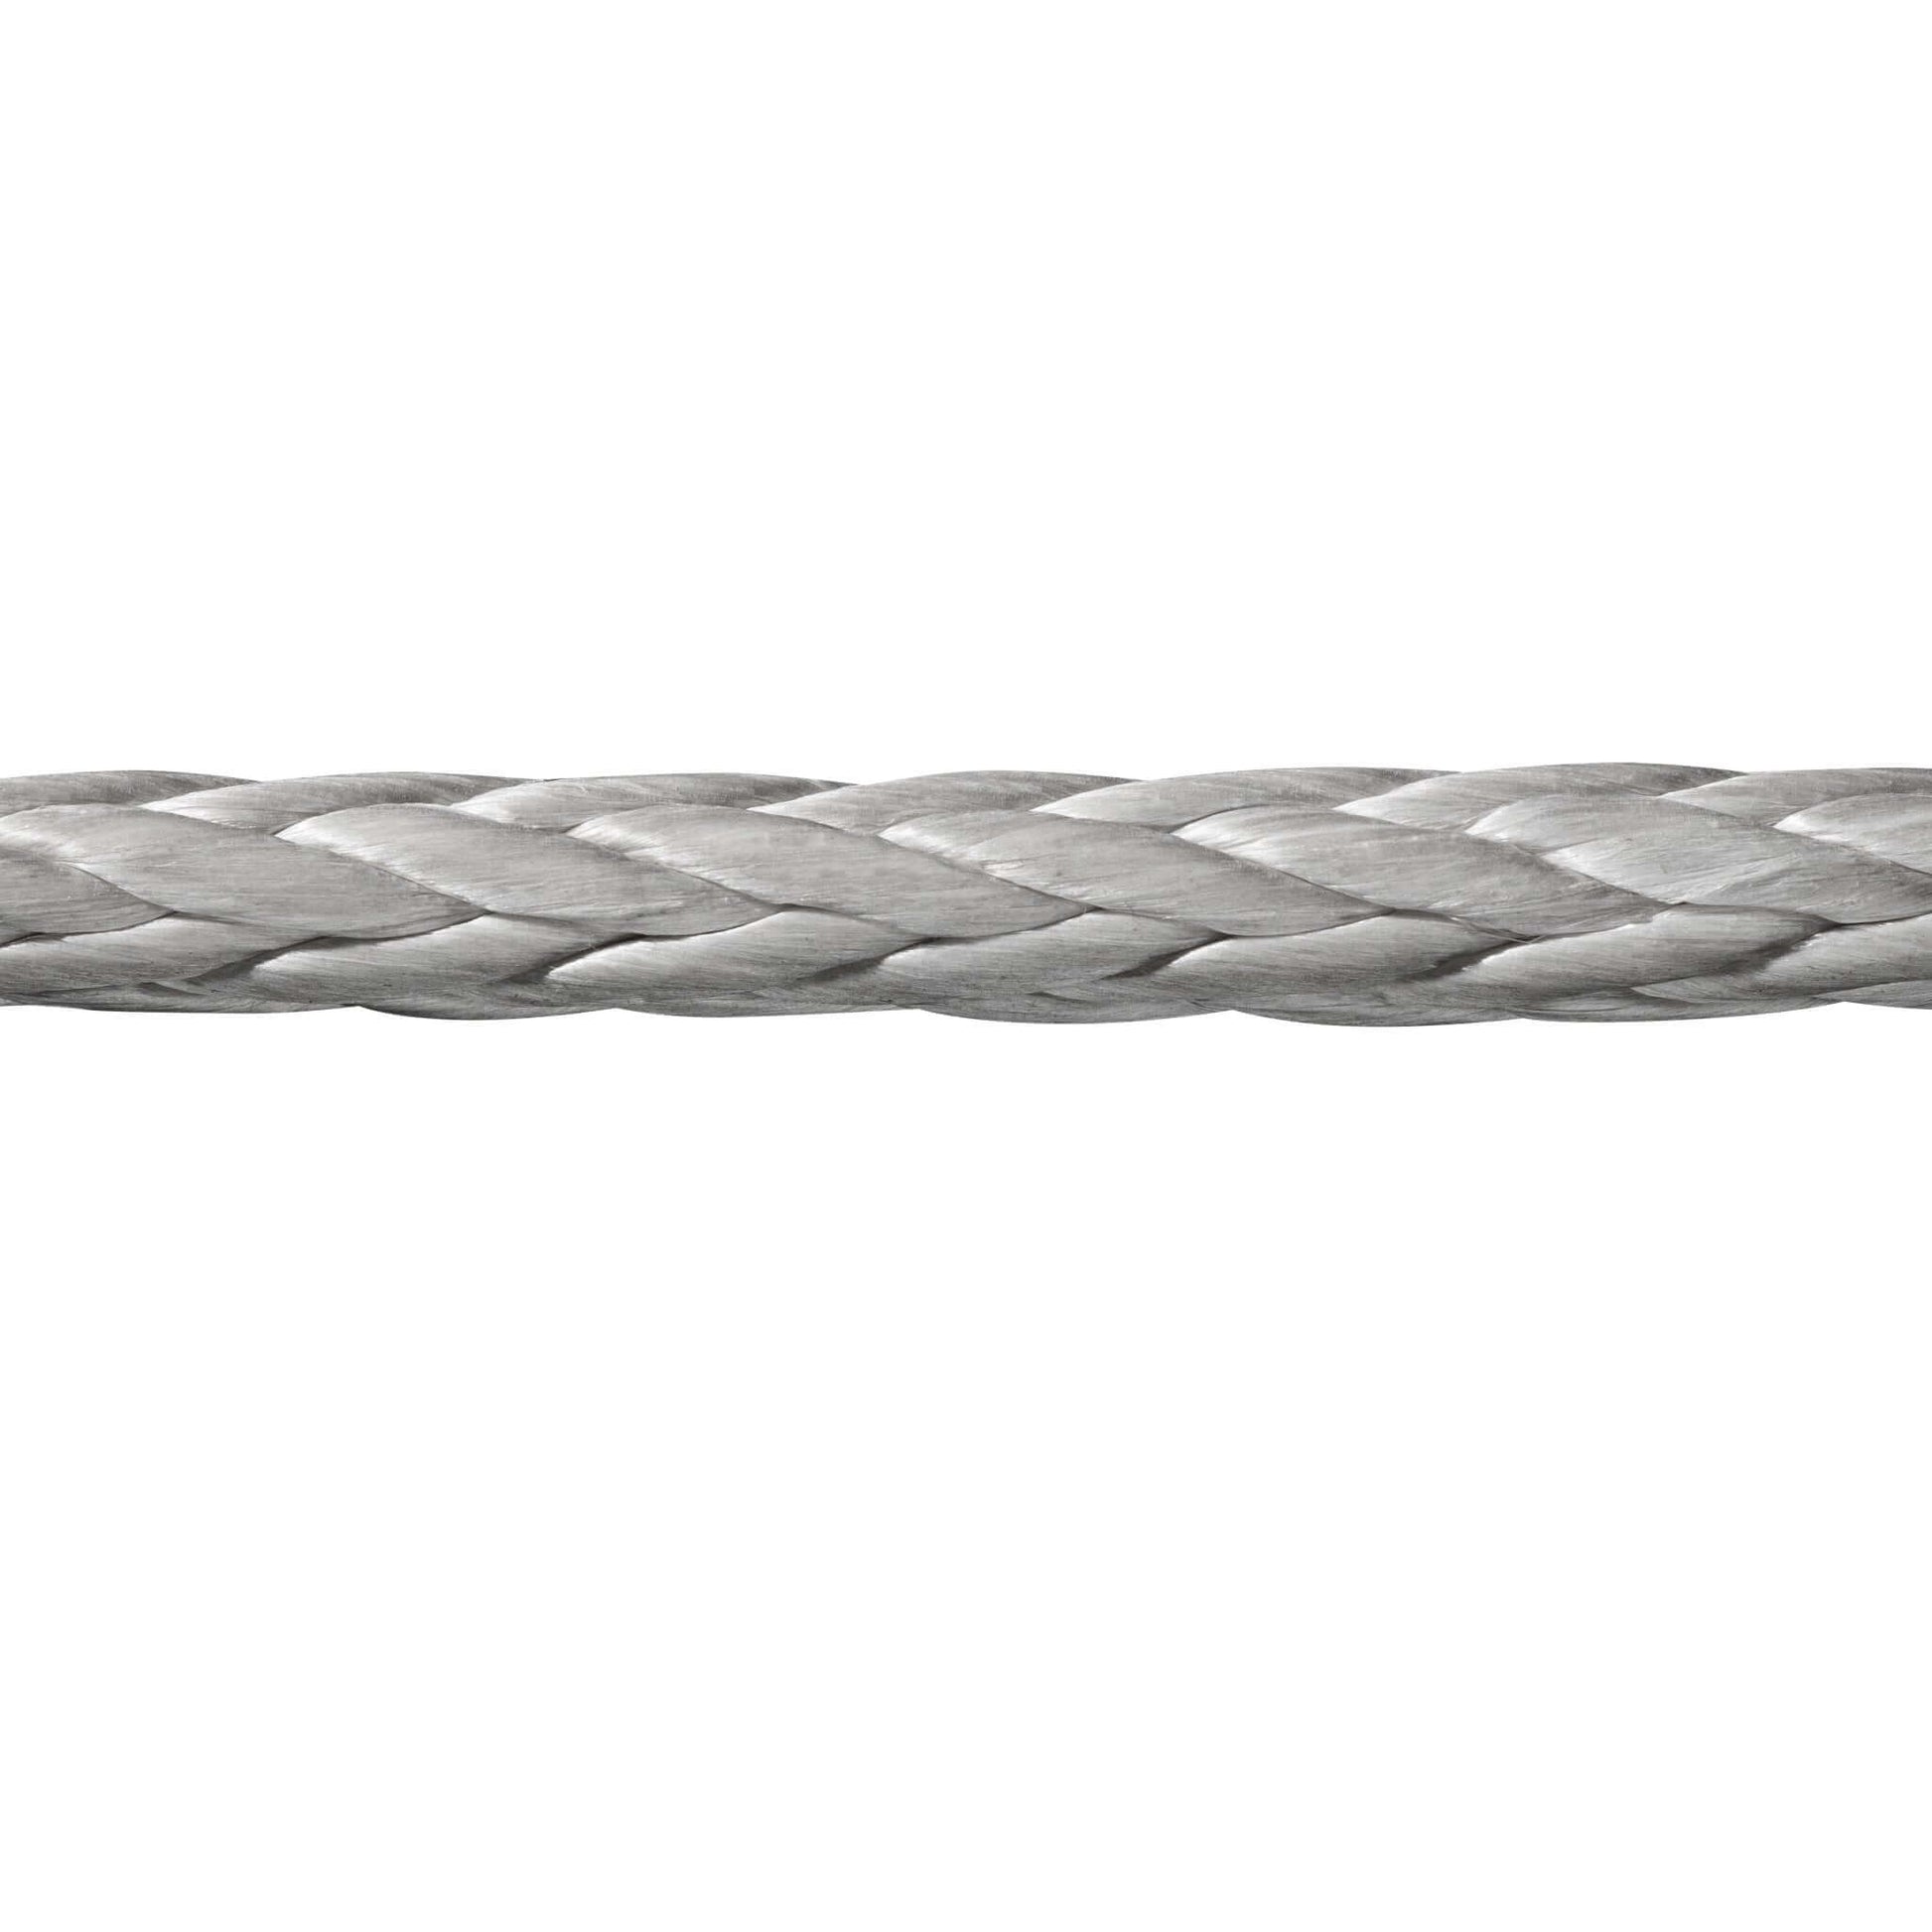 Die Seilflechter Windenseile sind das Ergebnis innovativer High-Tech-Fertigung. Dank der extrem hochfesten Kunstfaser Novoleen® bieten diese Seile eine vergleichbare Festigkeit wie Stahlseile, jedoch mit zahlreichen Vorteilen. 